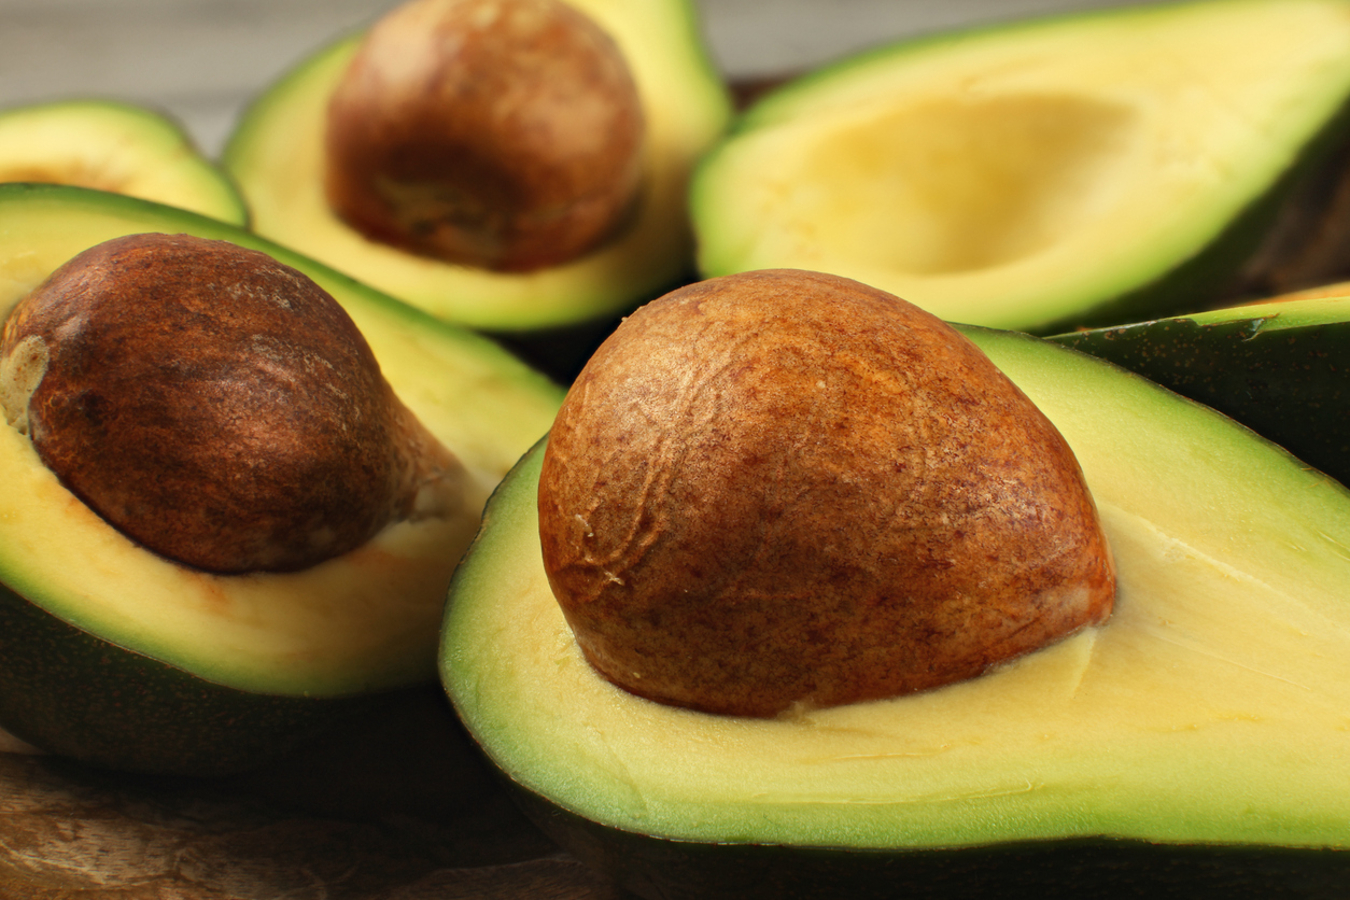 O abacate é rico em gorduras saudáveis e uma variedade de nutrientes, sendo reconhecido por seus benefícios